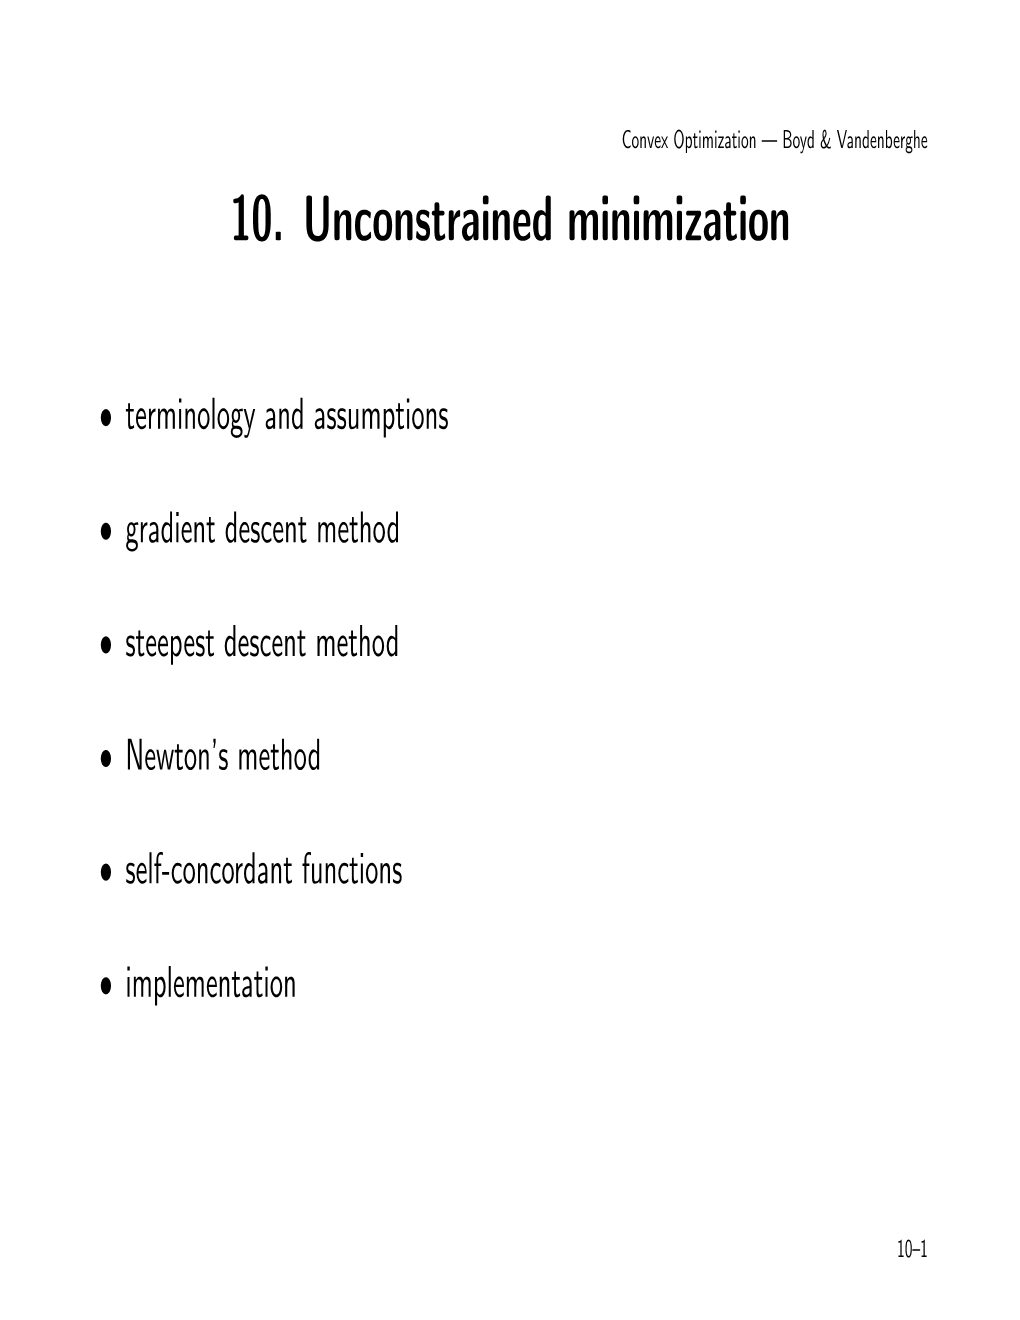 10. Unconstrained Minimization